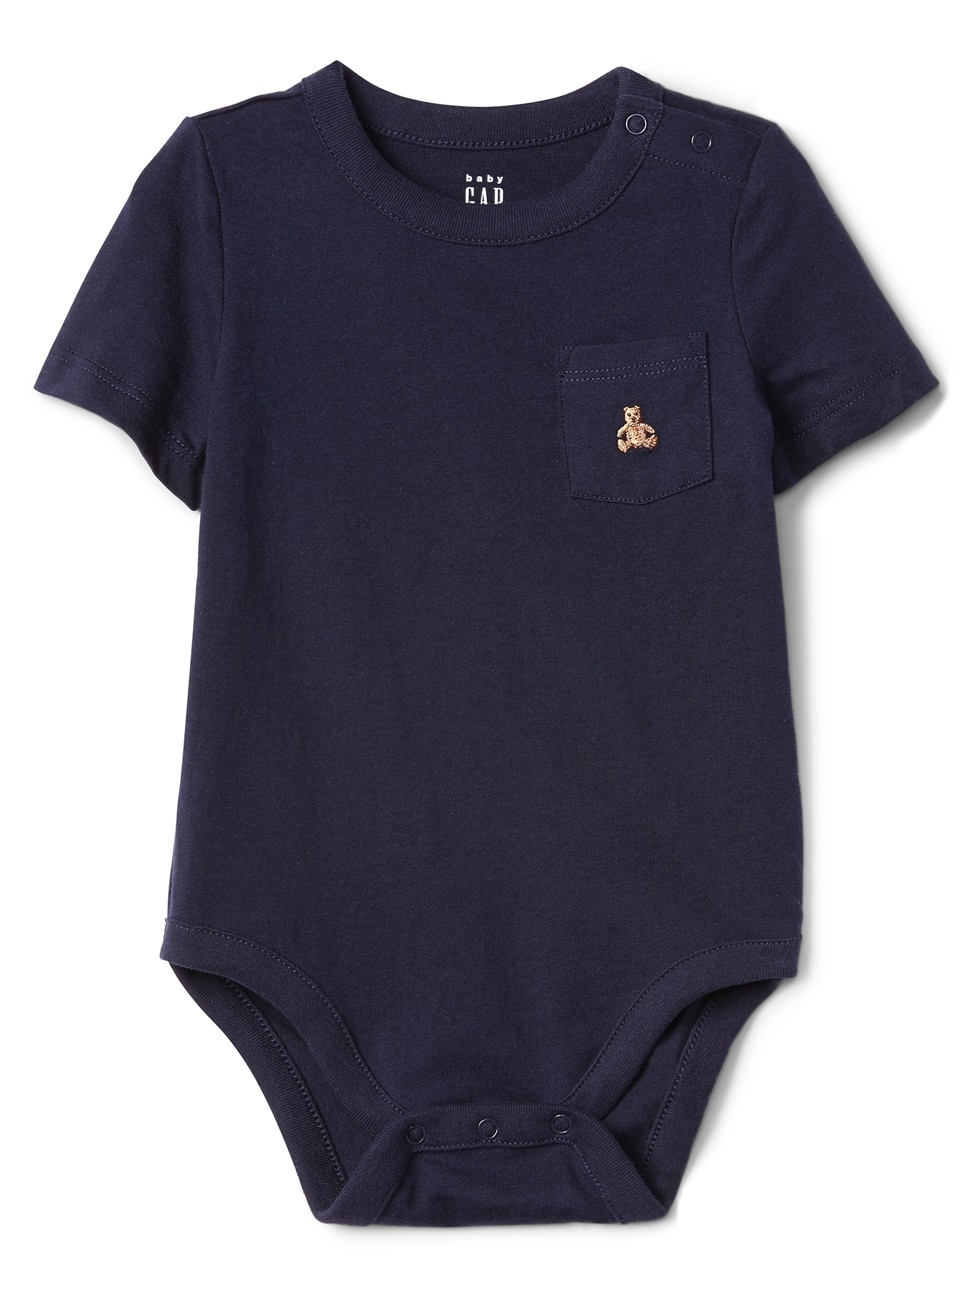 嬰兒裝|小熊印花口袋圓領包屁衣-海軍藍色